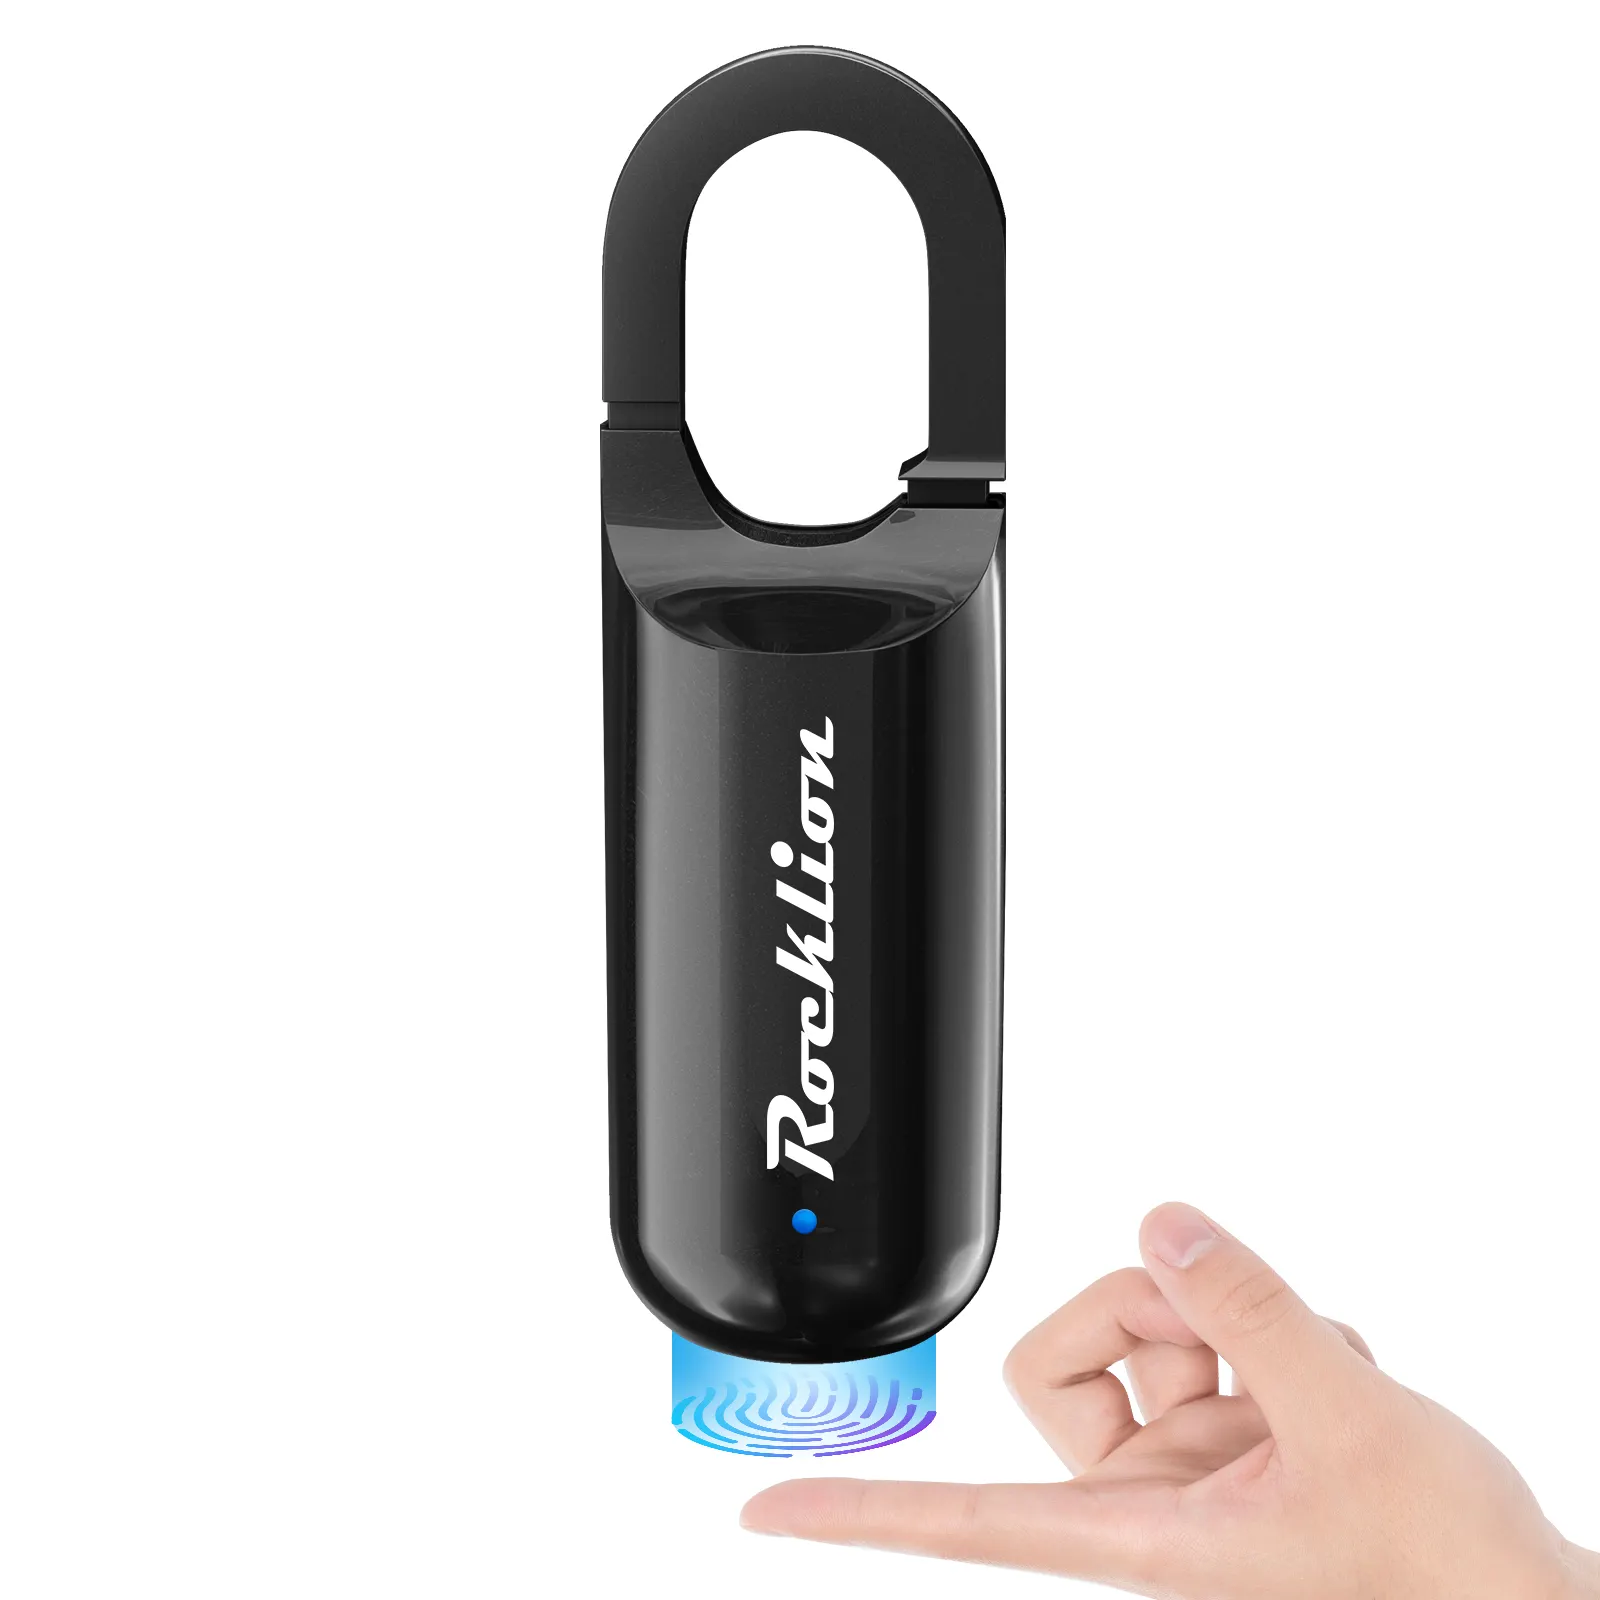 Huella dactilar biométrica de alta seguridad, para usuarios, huella dactilar, candado inteligente para Casillero